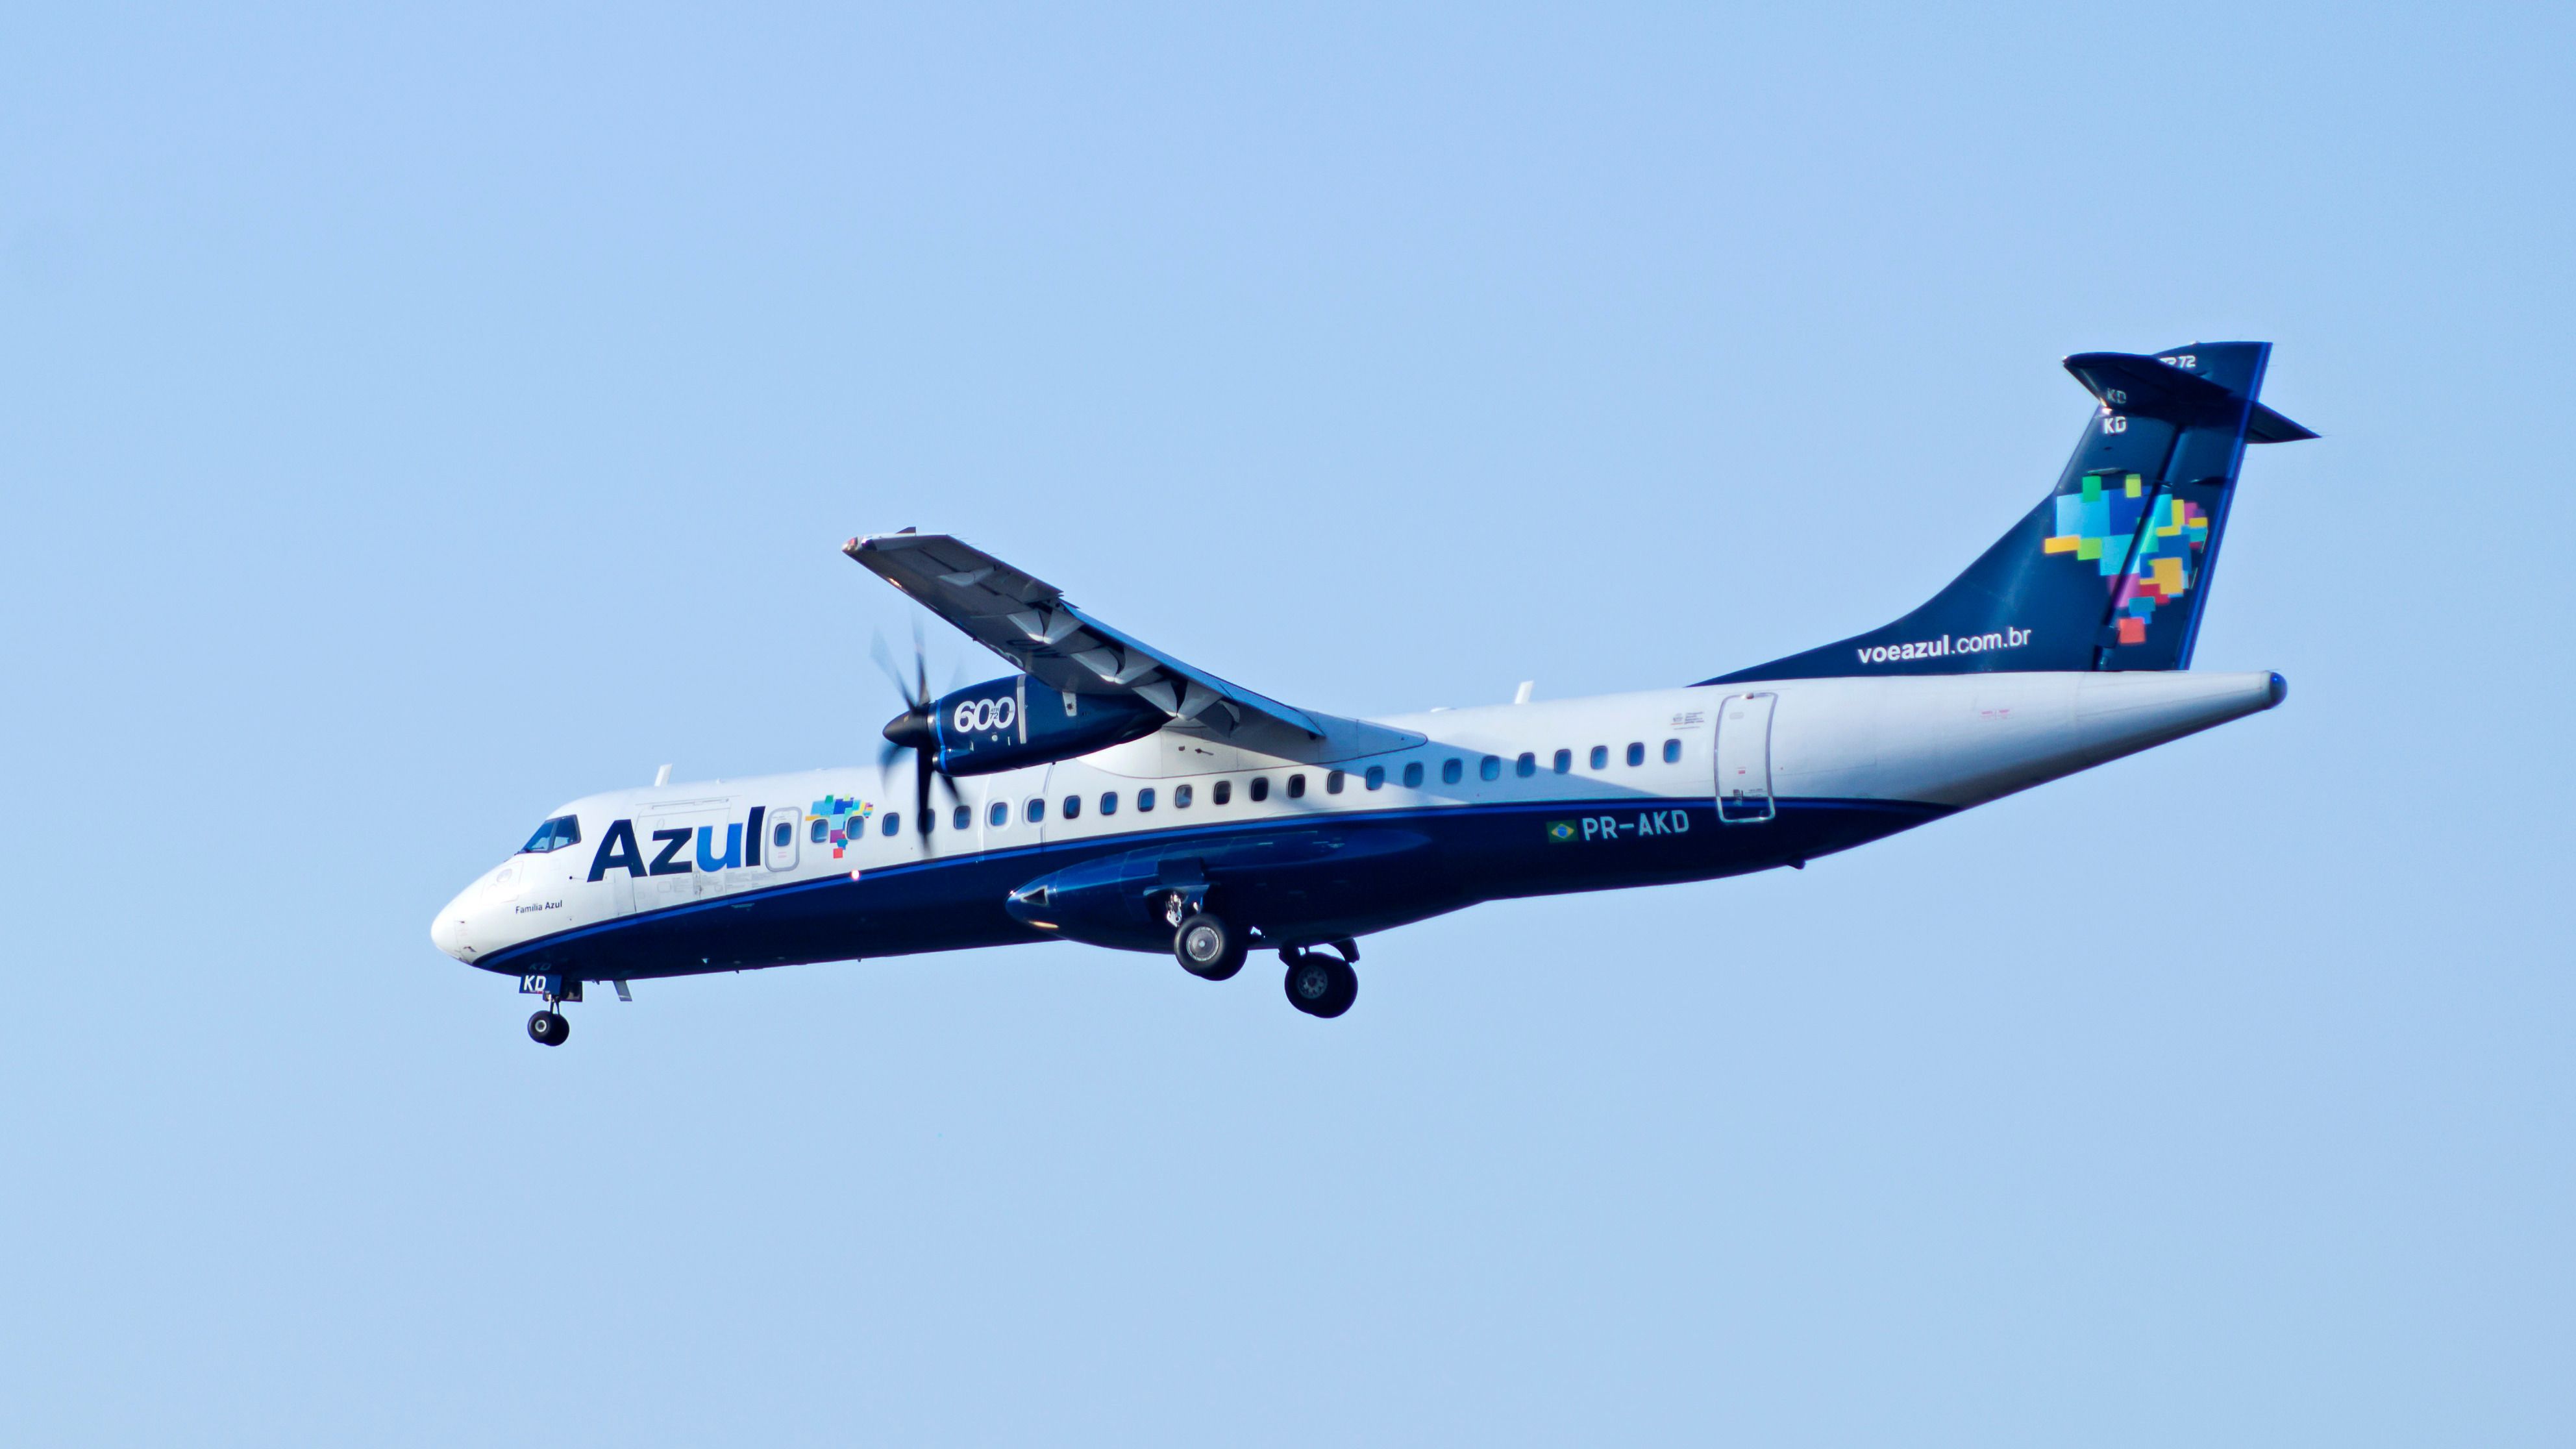 An Azul ATR-72-600 flying in the sky.